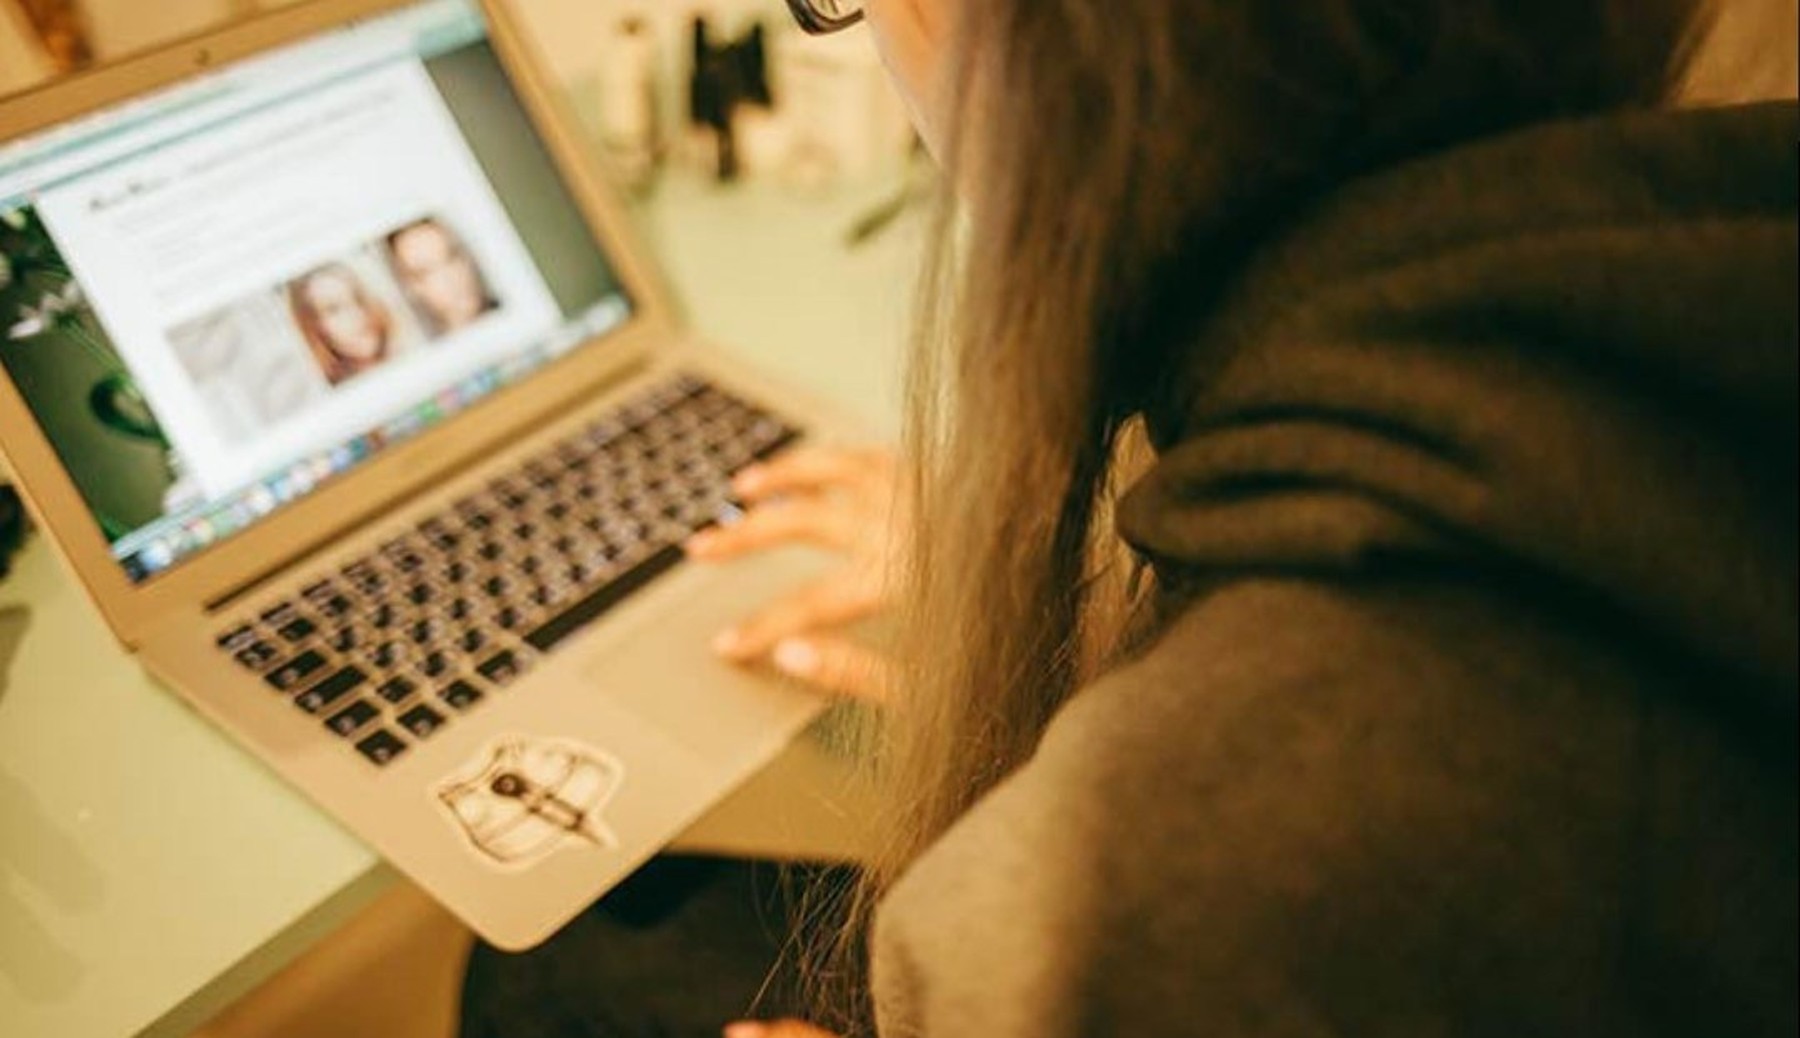 Over-de-schouder-shot van een meisje die op haar laptop kijkt